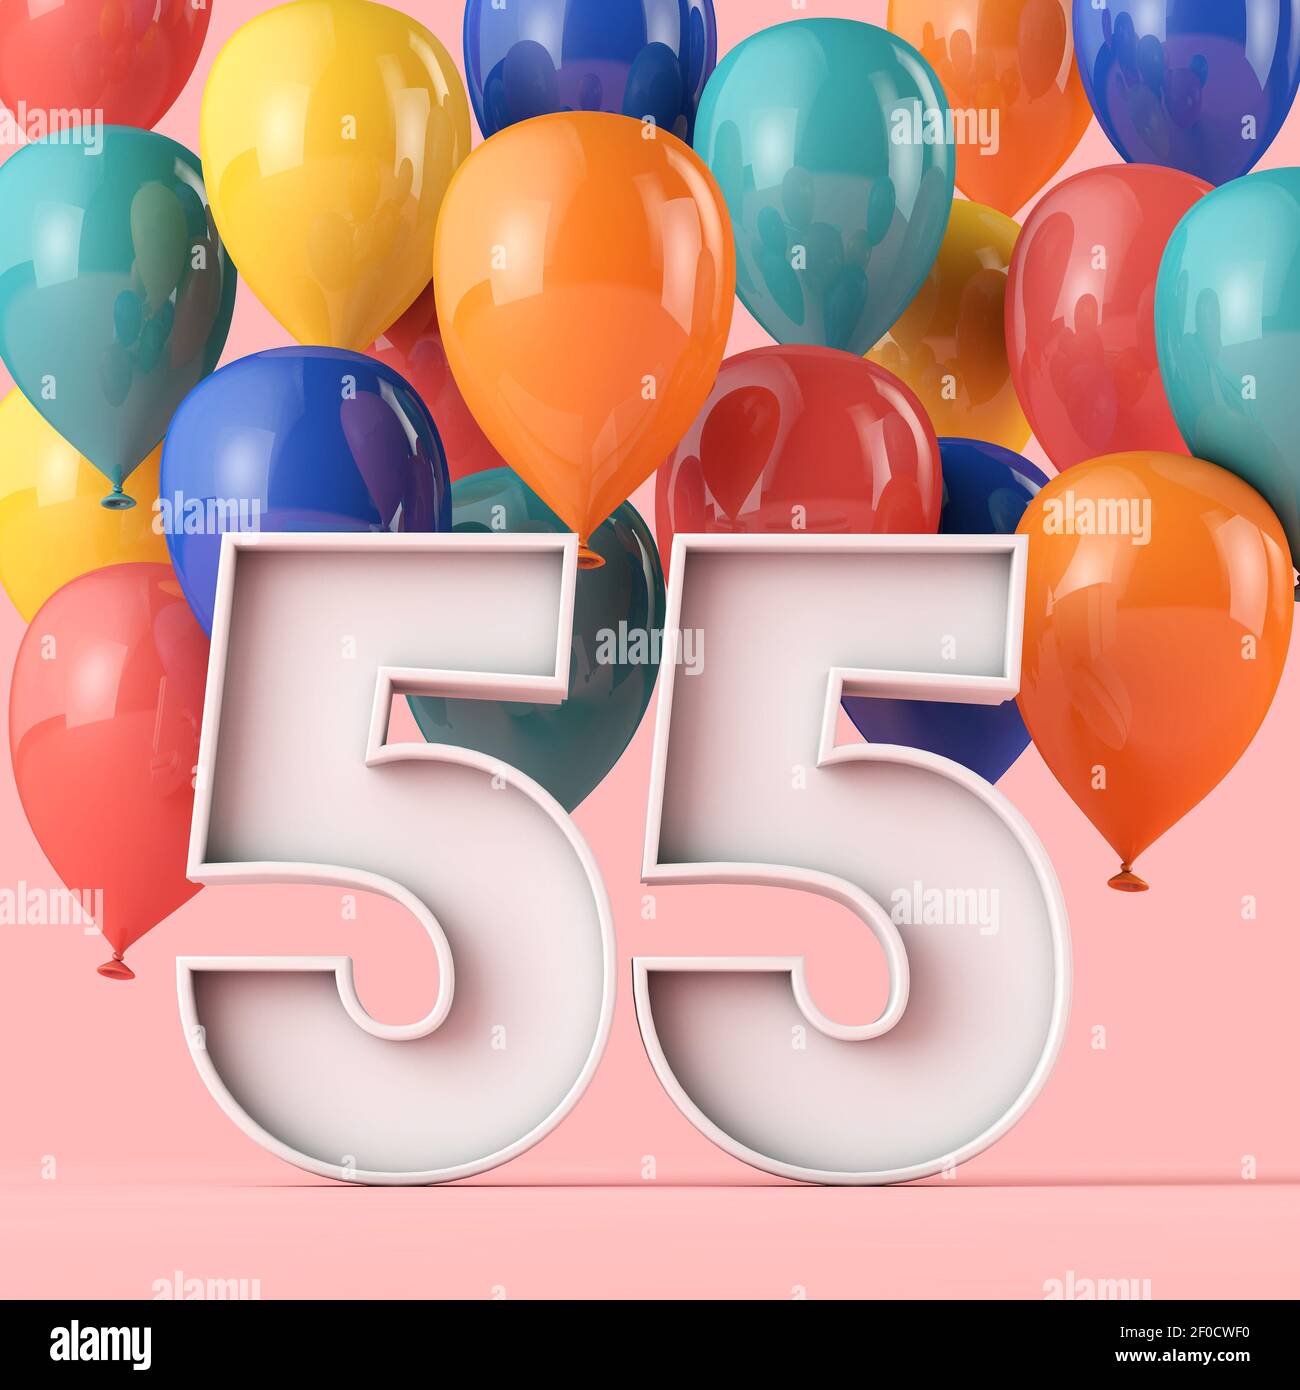 Joyeux Anniversaire 55 Ans Carte De Voeux Couleur De L Affiche Photo Stock Alamy